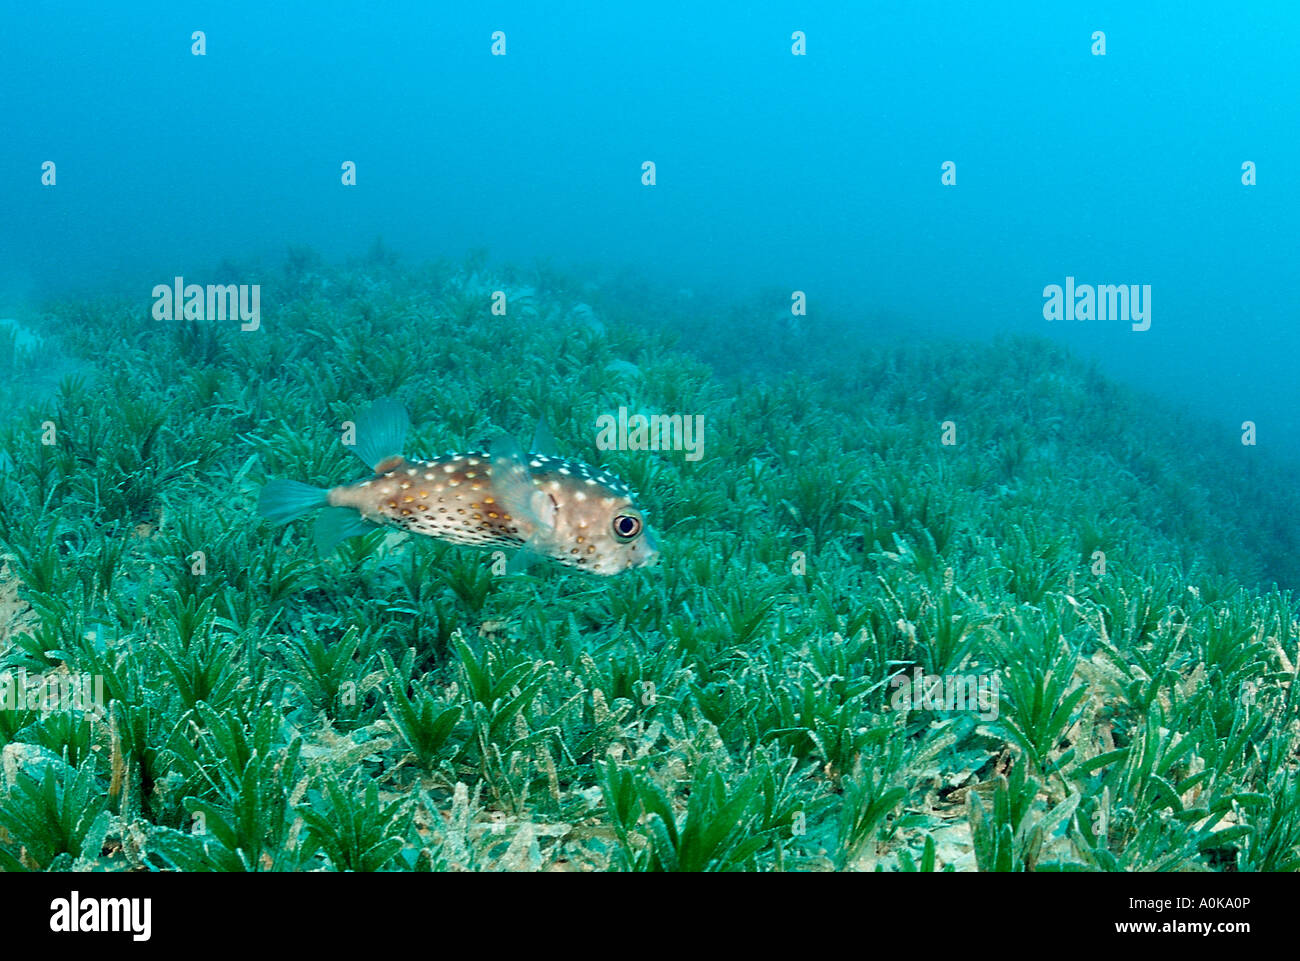 Porcupinefish over Seagras Diodon hystrix Marsa Alam Red Sea Egypt Stock Photo